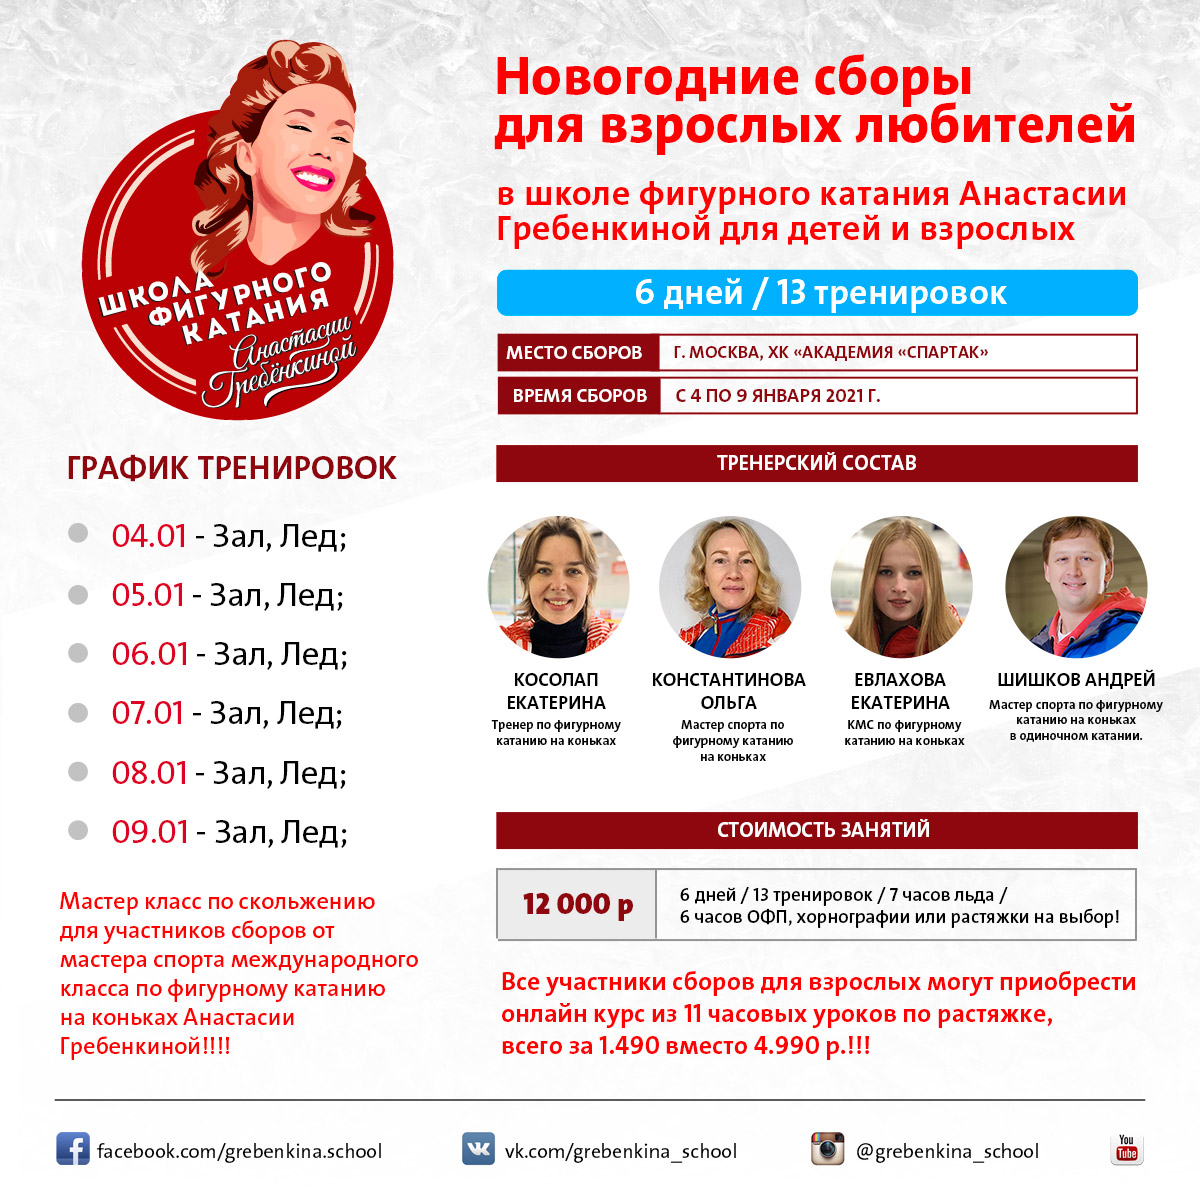 Новогодние ледовые сборы для взрослых любителей с 4 по 9 января в ШФК Анастасии Гребенкиной